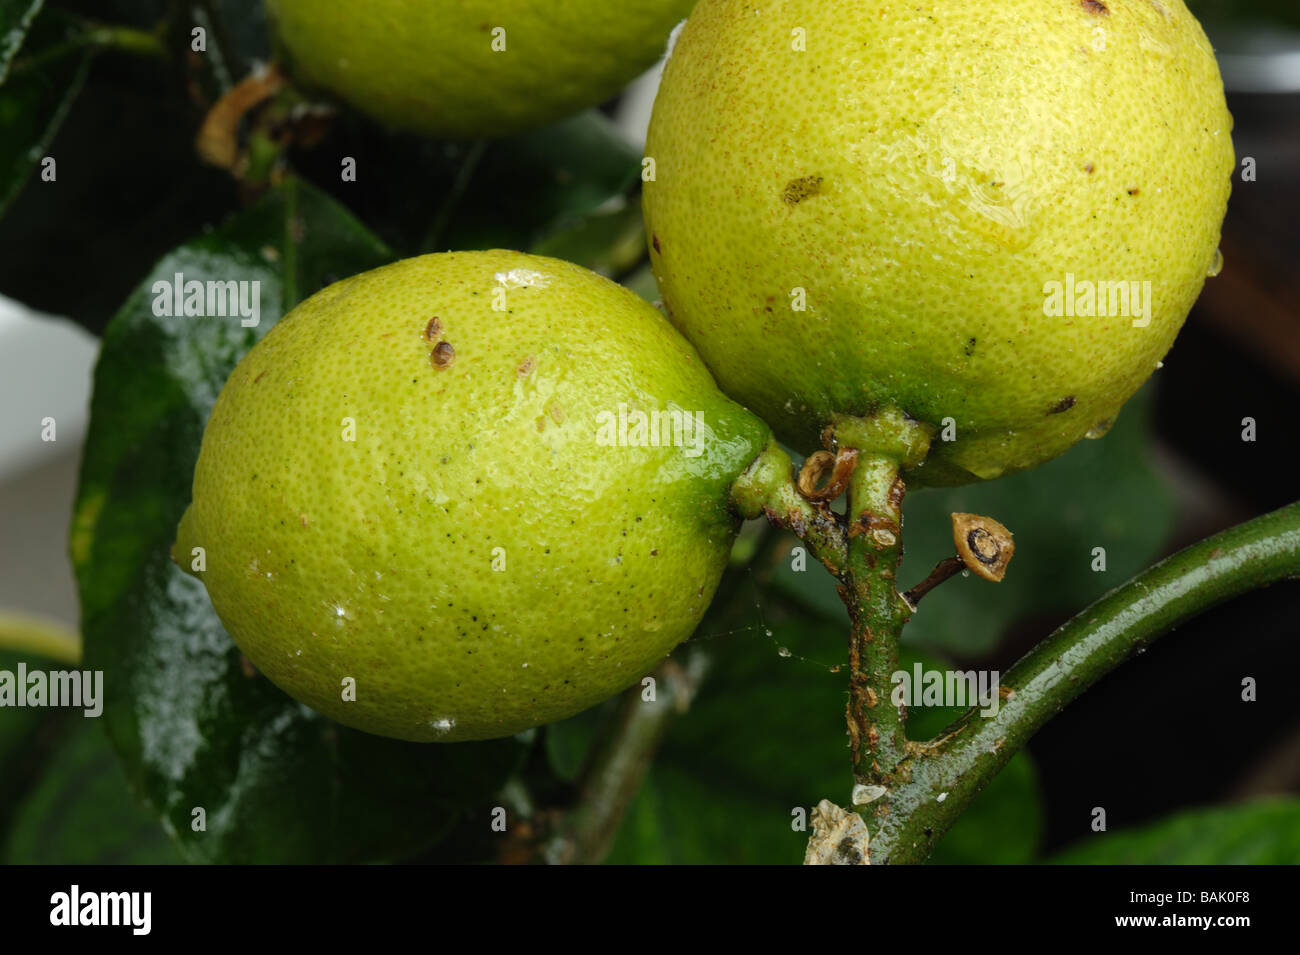 Honeydew marrón suave insectos Coccus hesperidum de fruta de limón Foto de stock